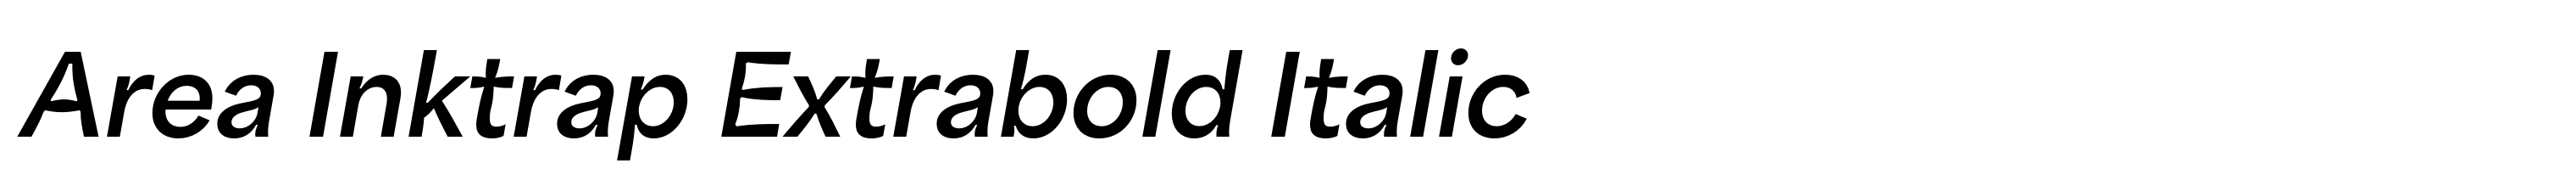 Area Inktrap Extrabold Italic